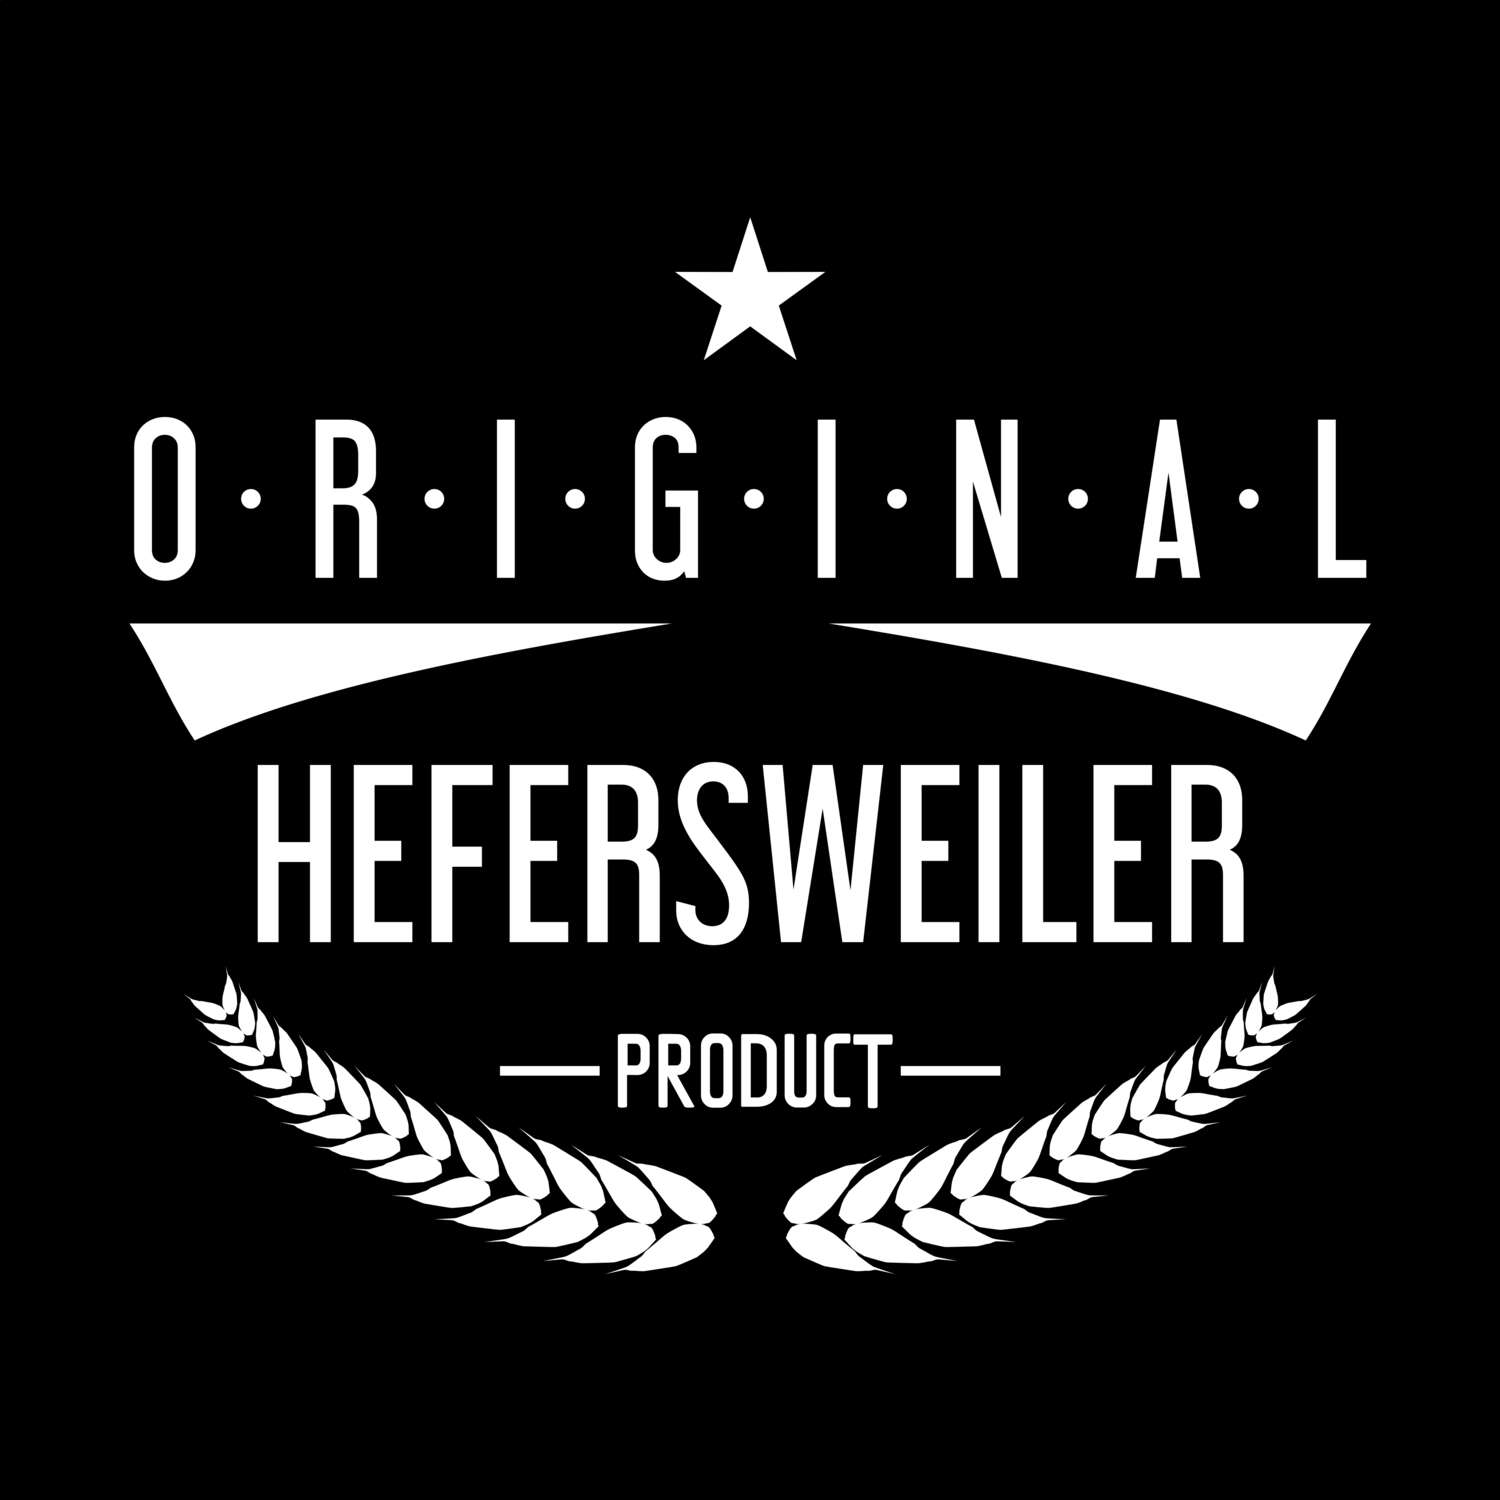 Hefersweiler T-Shirt »Original Product«